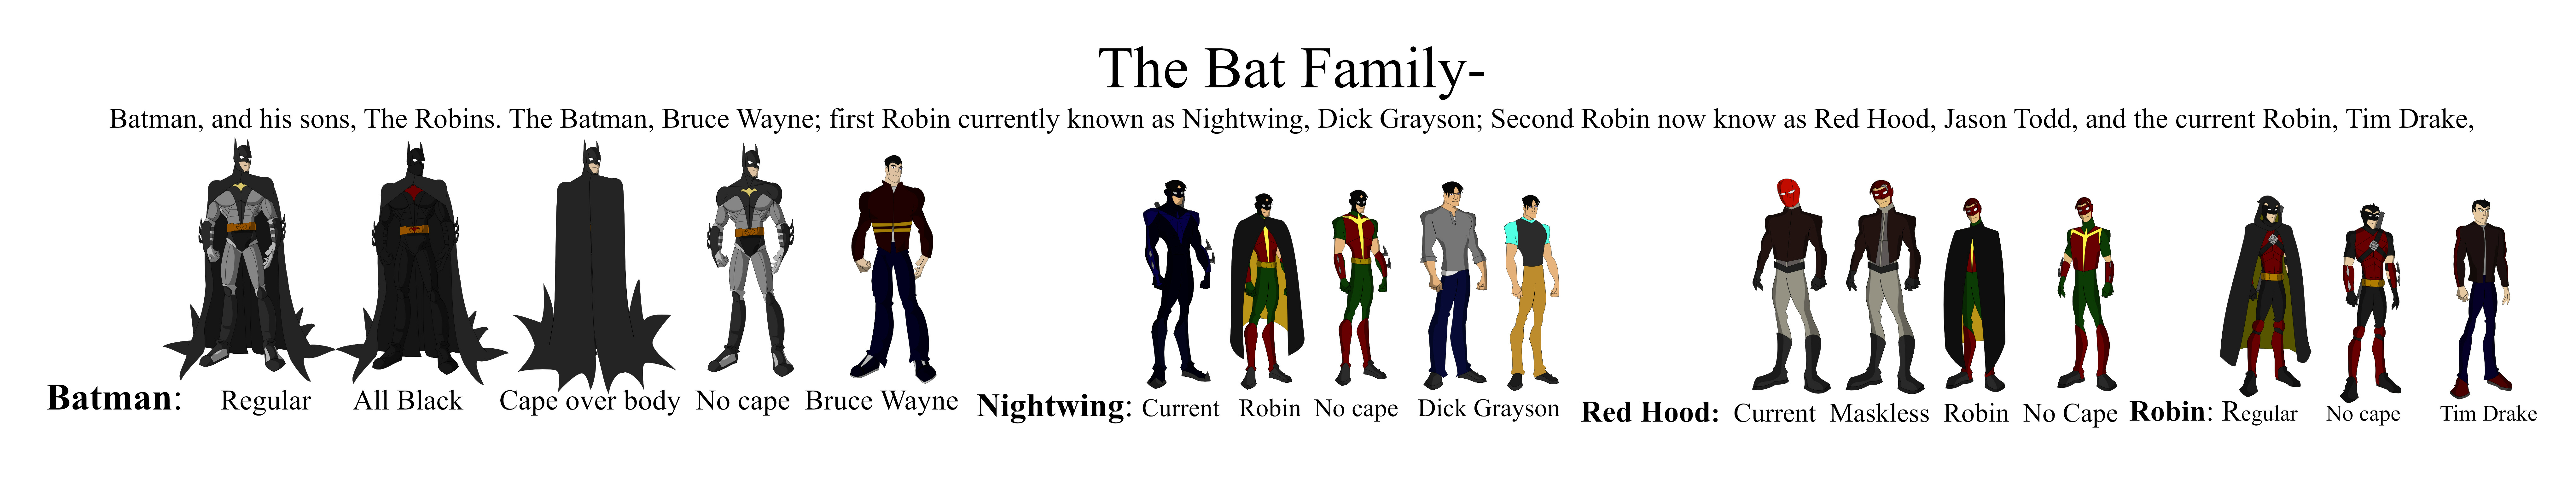 Batman Family Wallpaper By